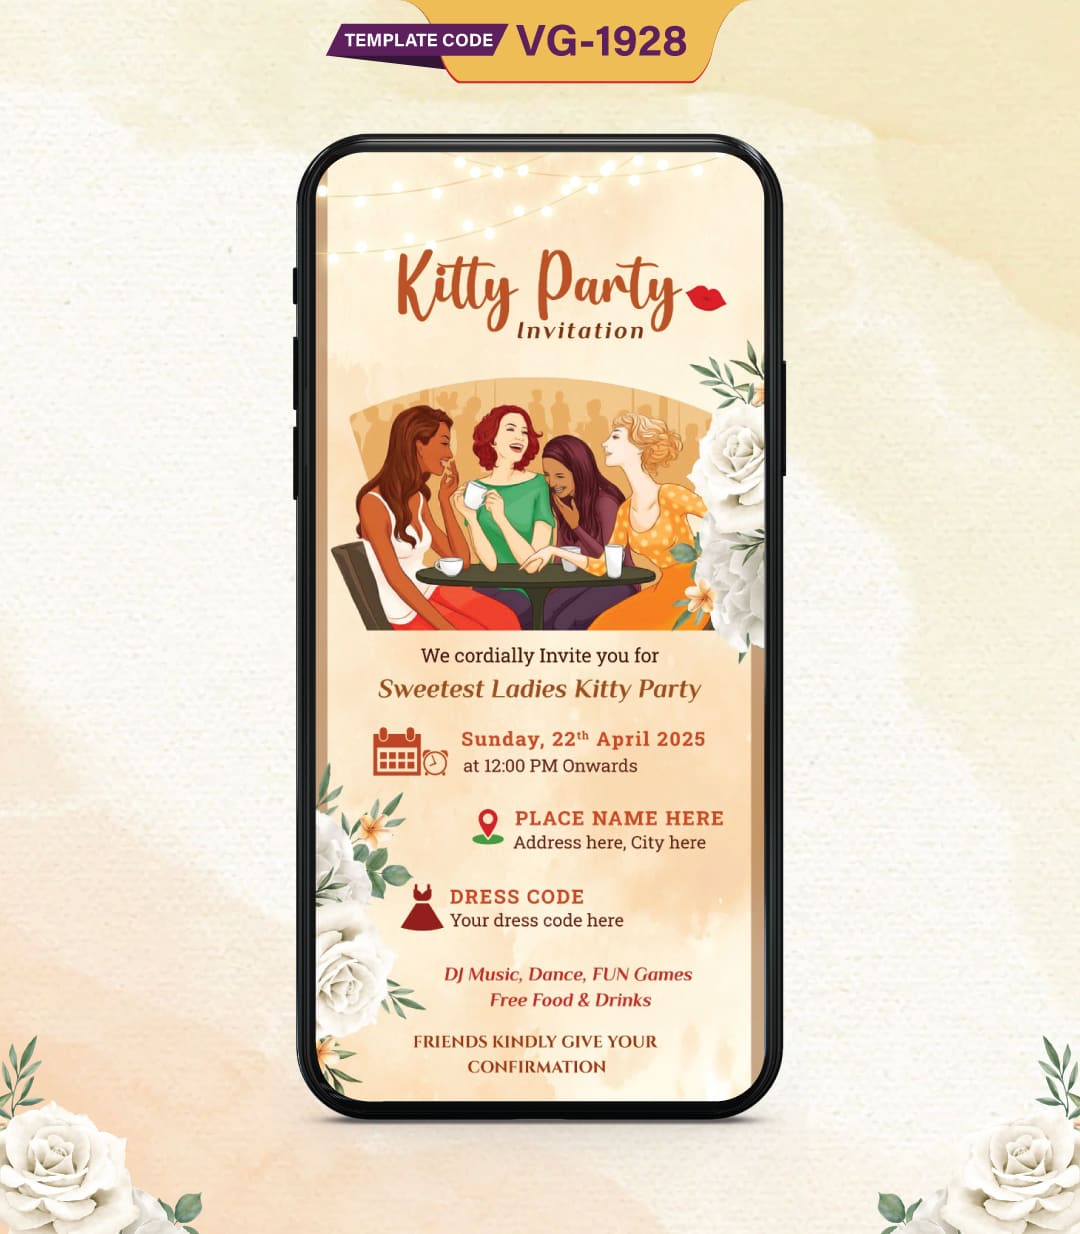 Kitty Party Invitation Templates